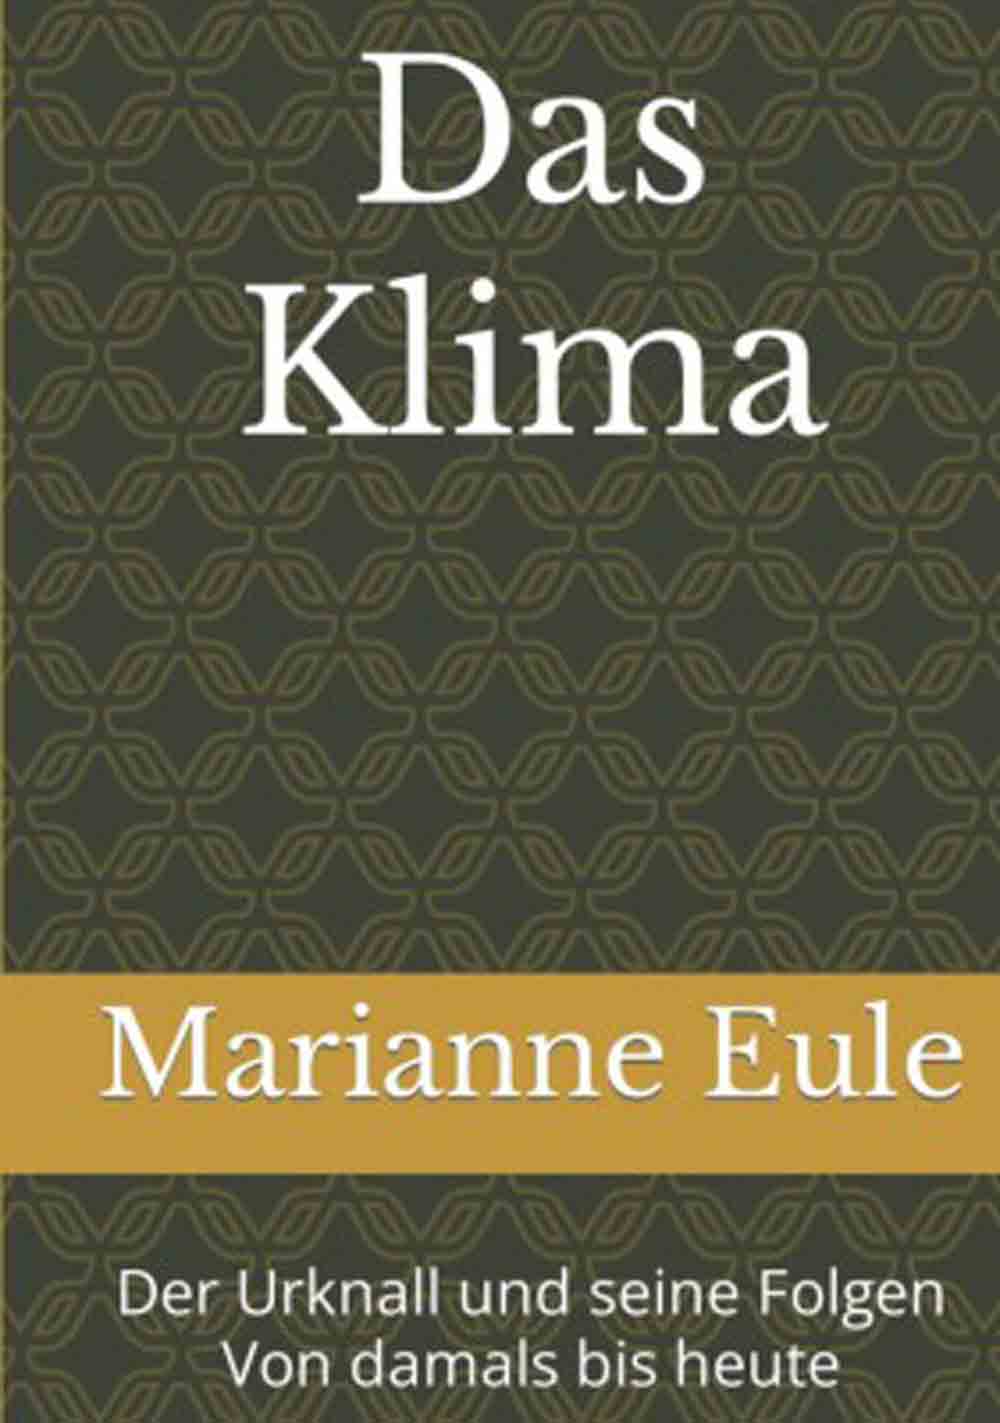 Anzeige: Lesetipps für Gütersloh, Marianne Eule, »Das Klima – der Urknall und seine Folgen von damals bis heute«